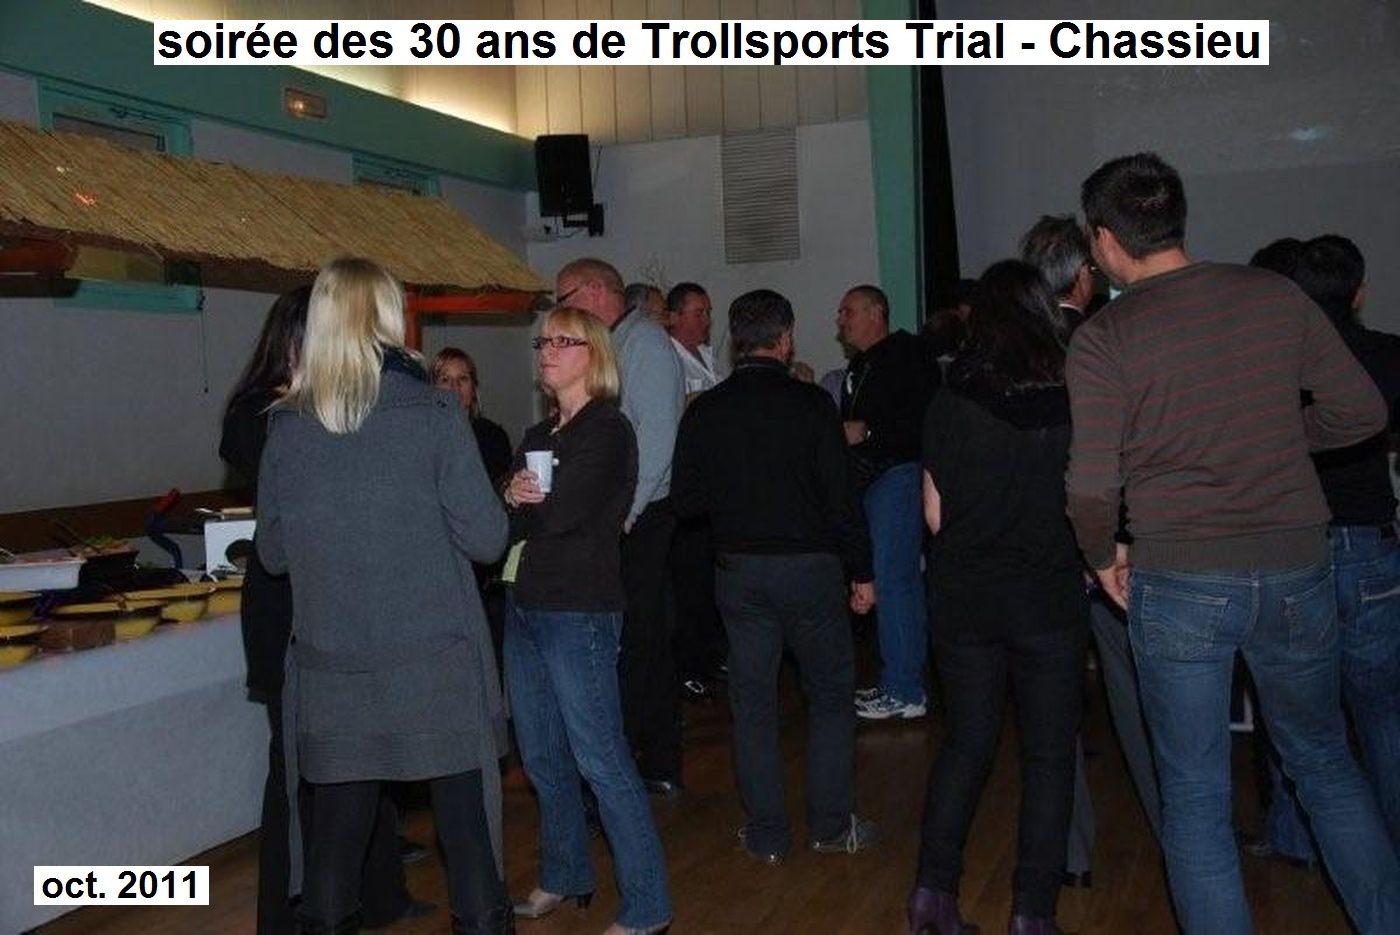 anniversaire/img/2011 10 anniv 30 ans trollsports trial D9.jpg